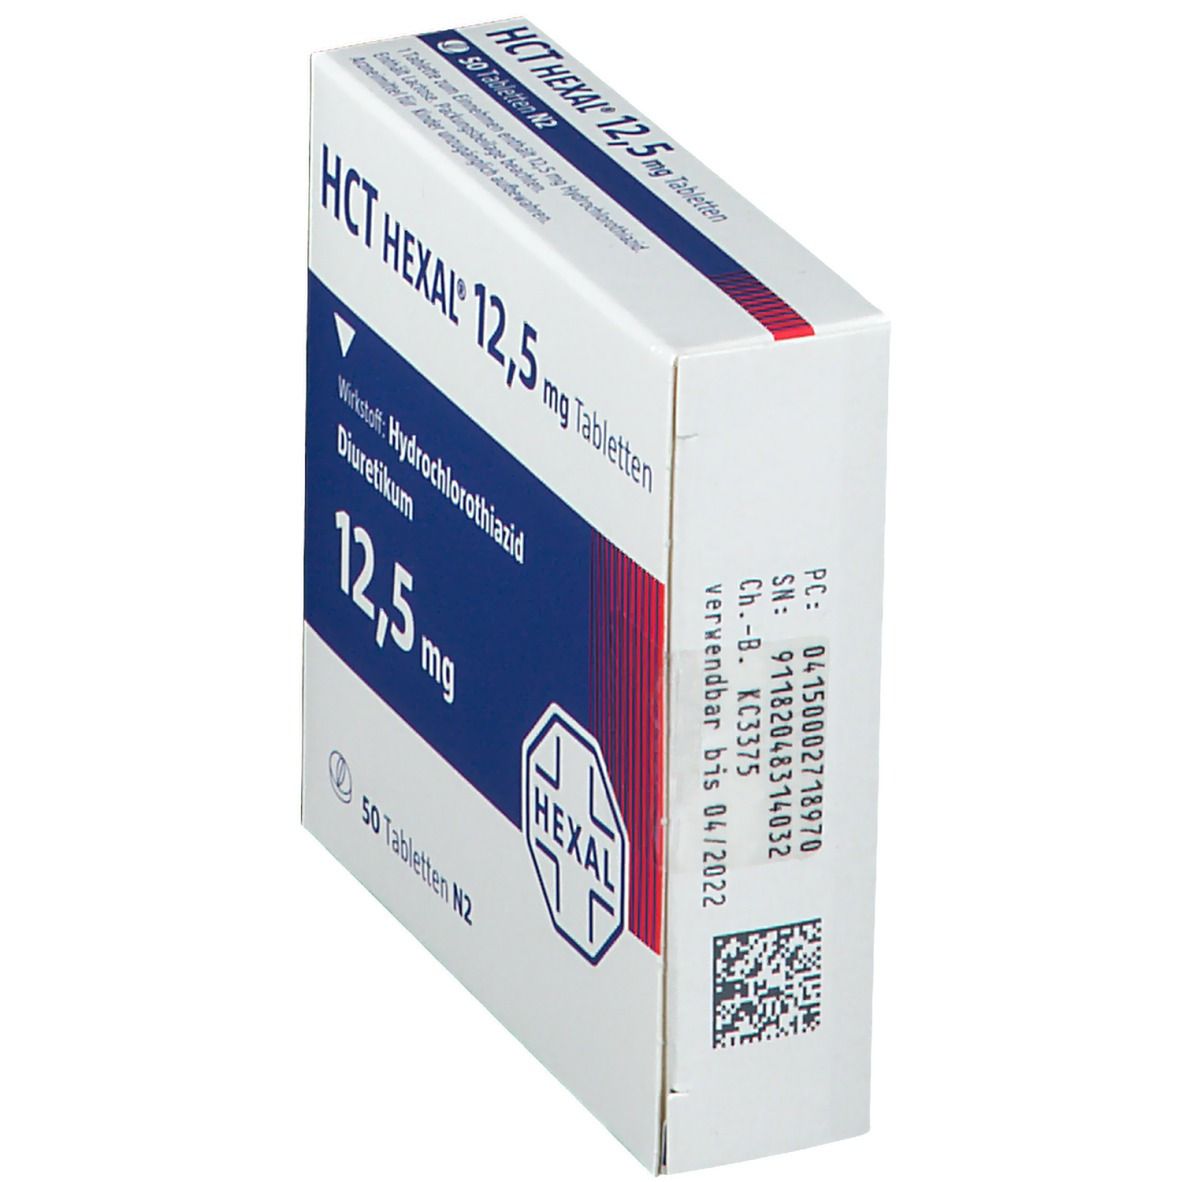 HCT HEXAL® 12,5 mg